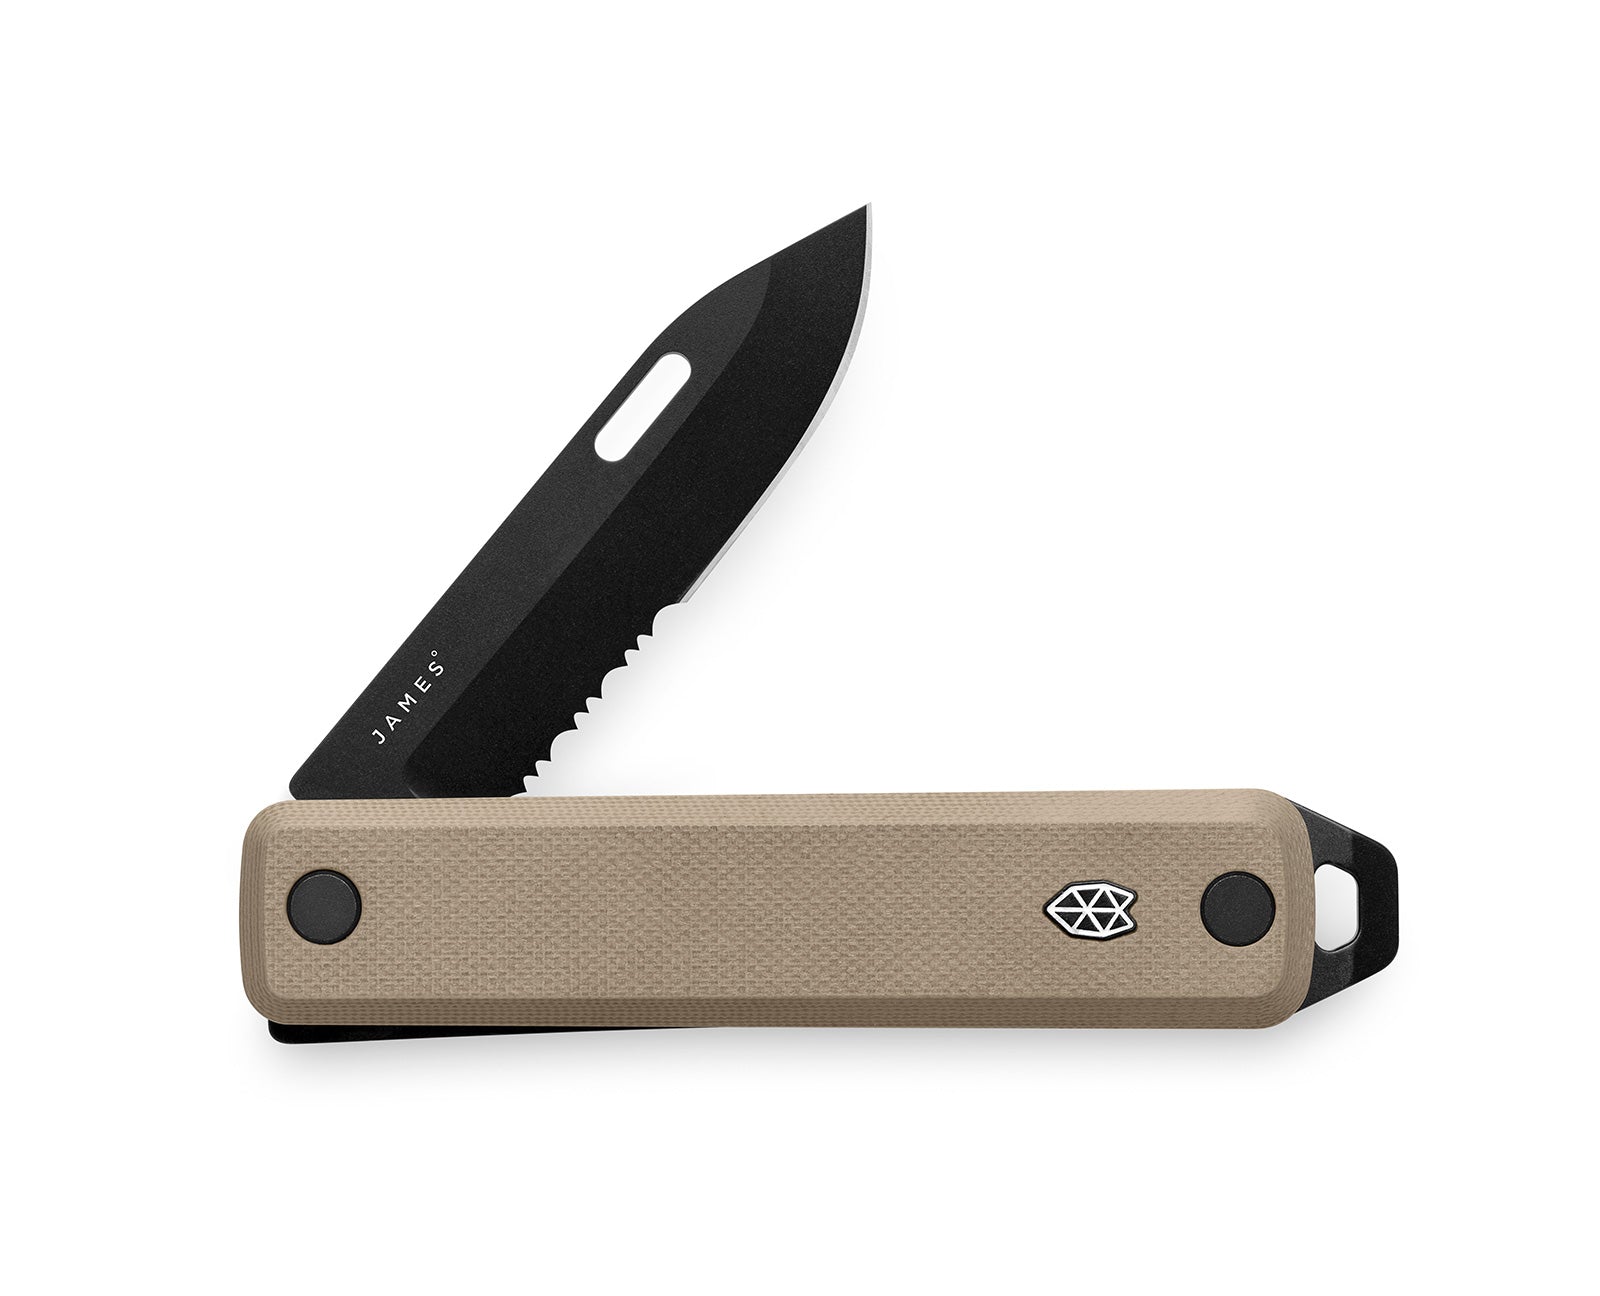 The Ellis Slim knife in coyote tan with black blade.